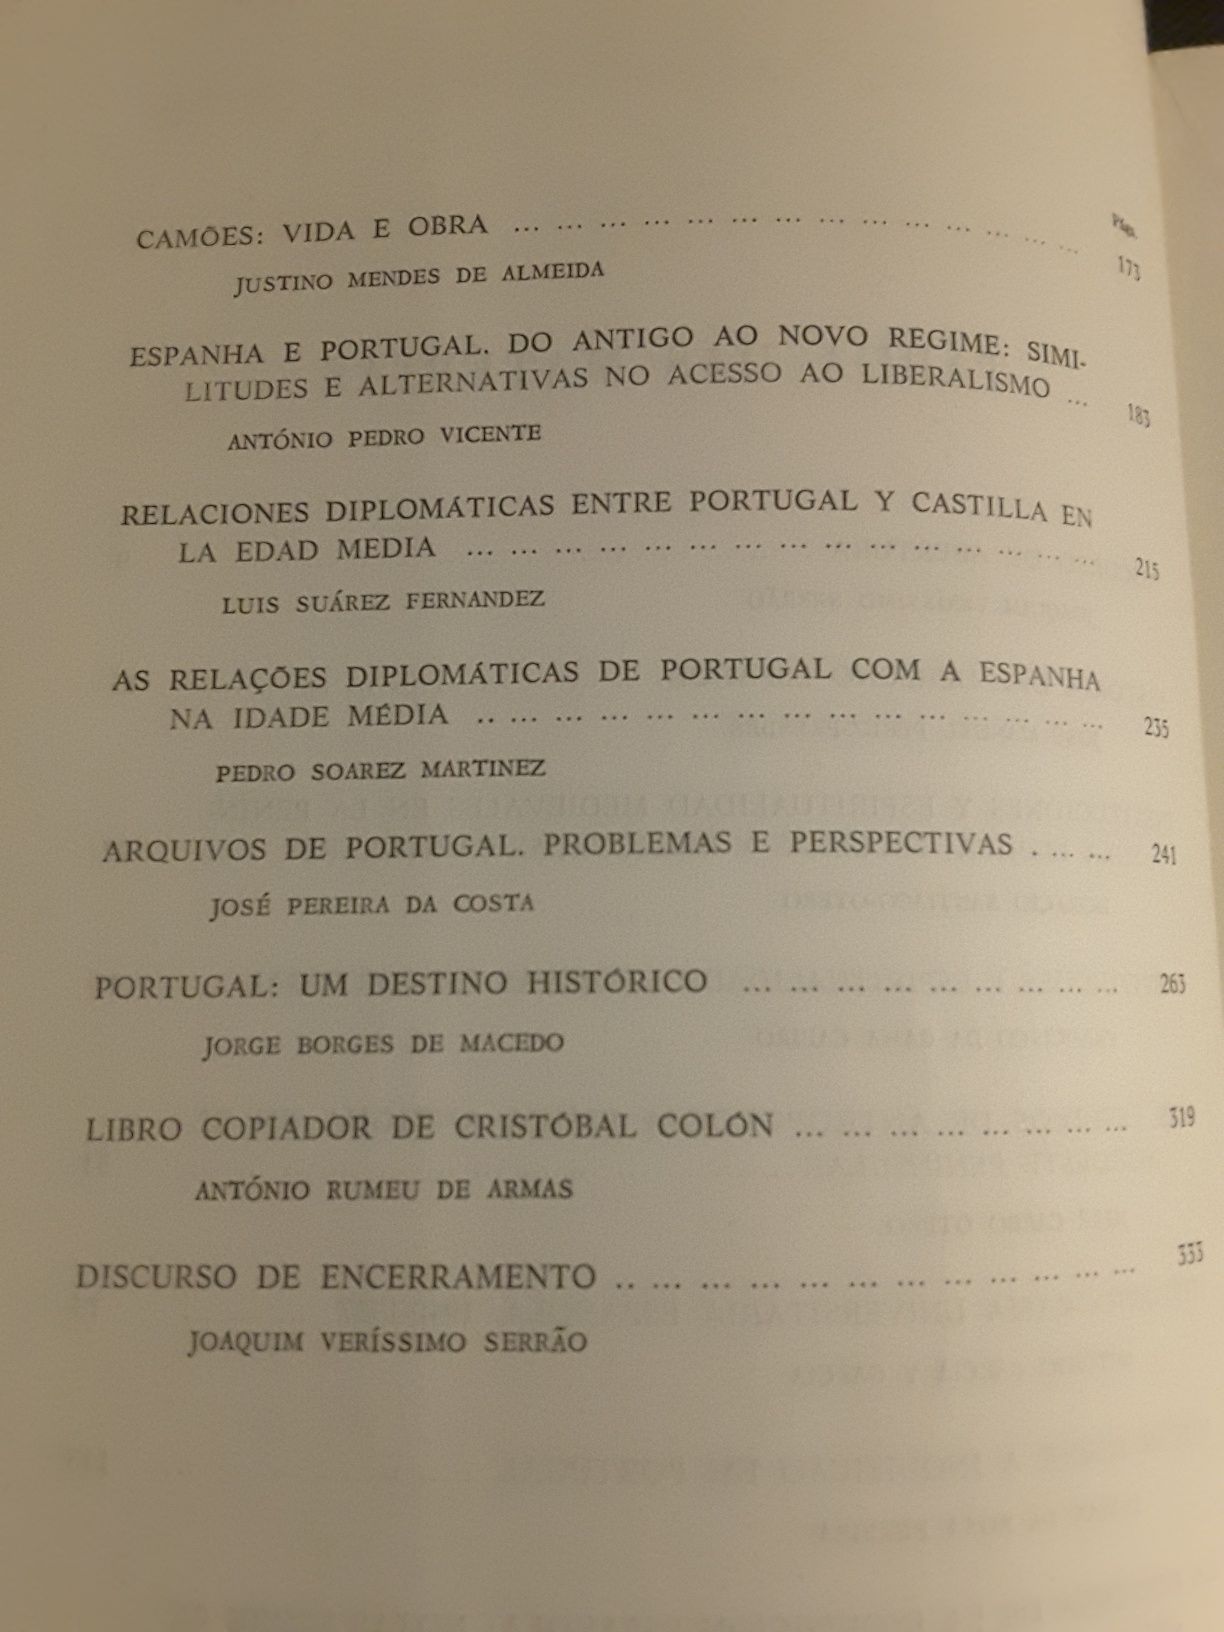 História Peninsular-Inquisição/ Crónica do Hospital de Todos-os-Santos